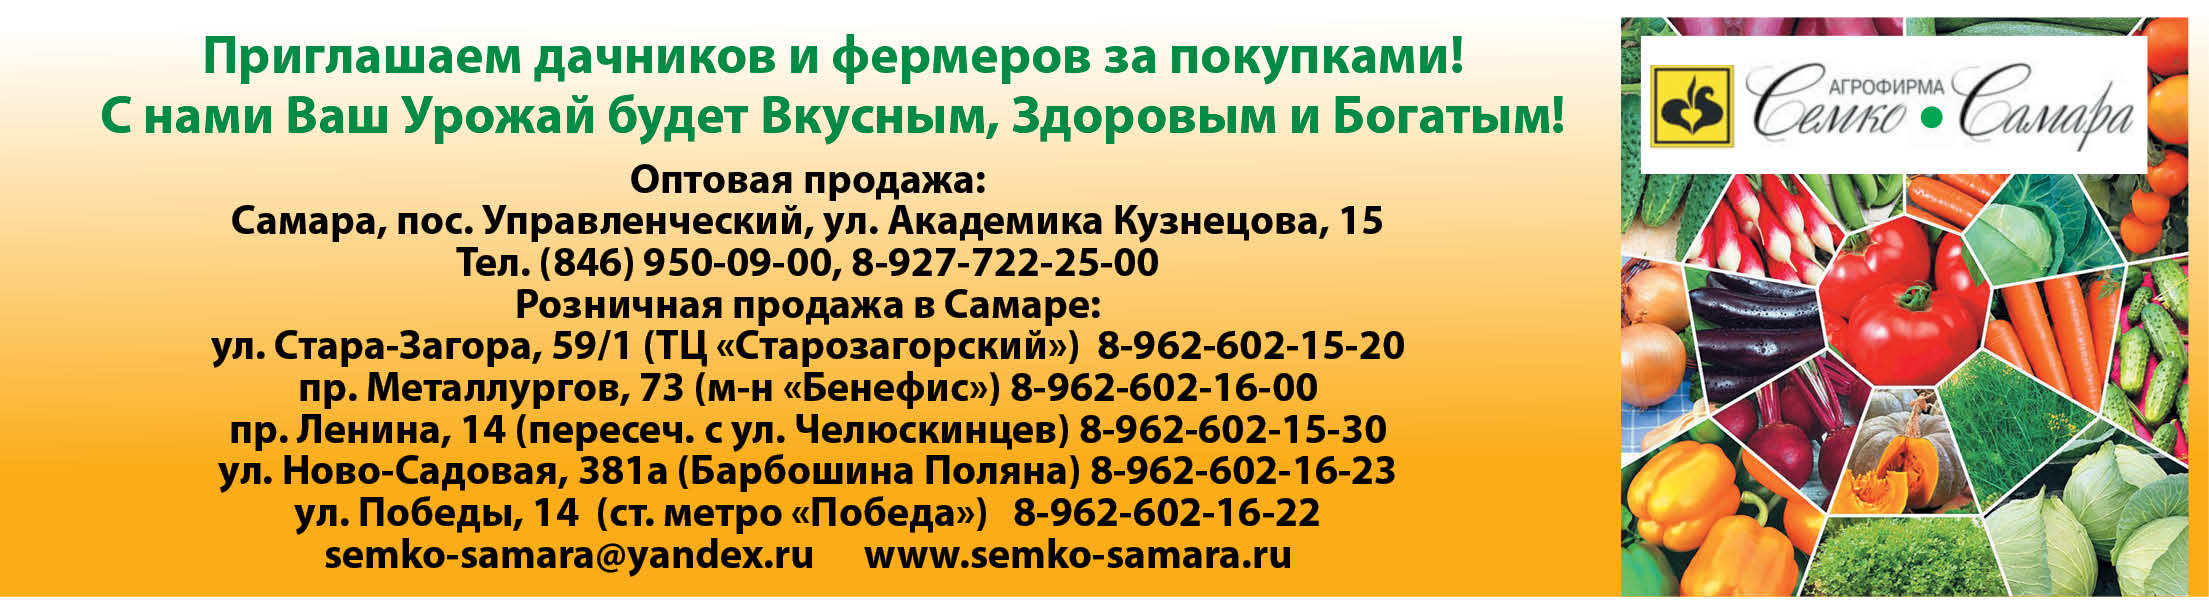 Семко самара официальный сайт каталог 20 19 садовод вконтакте